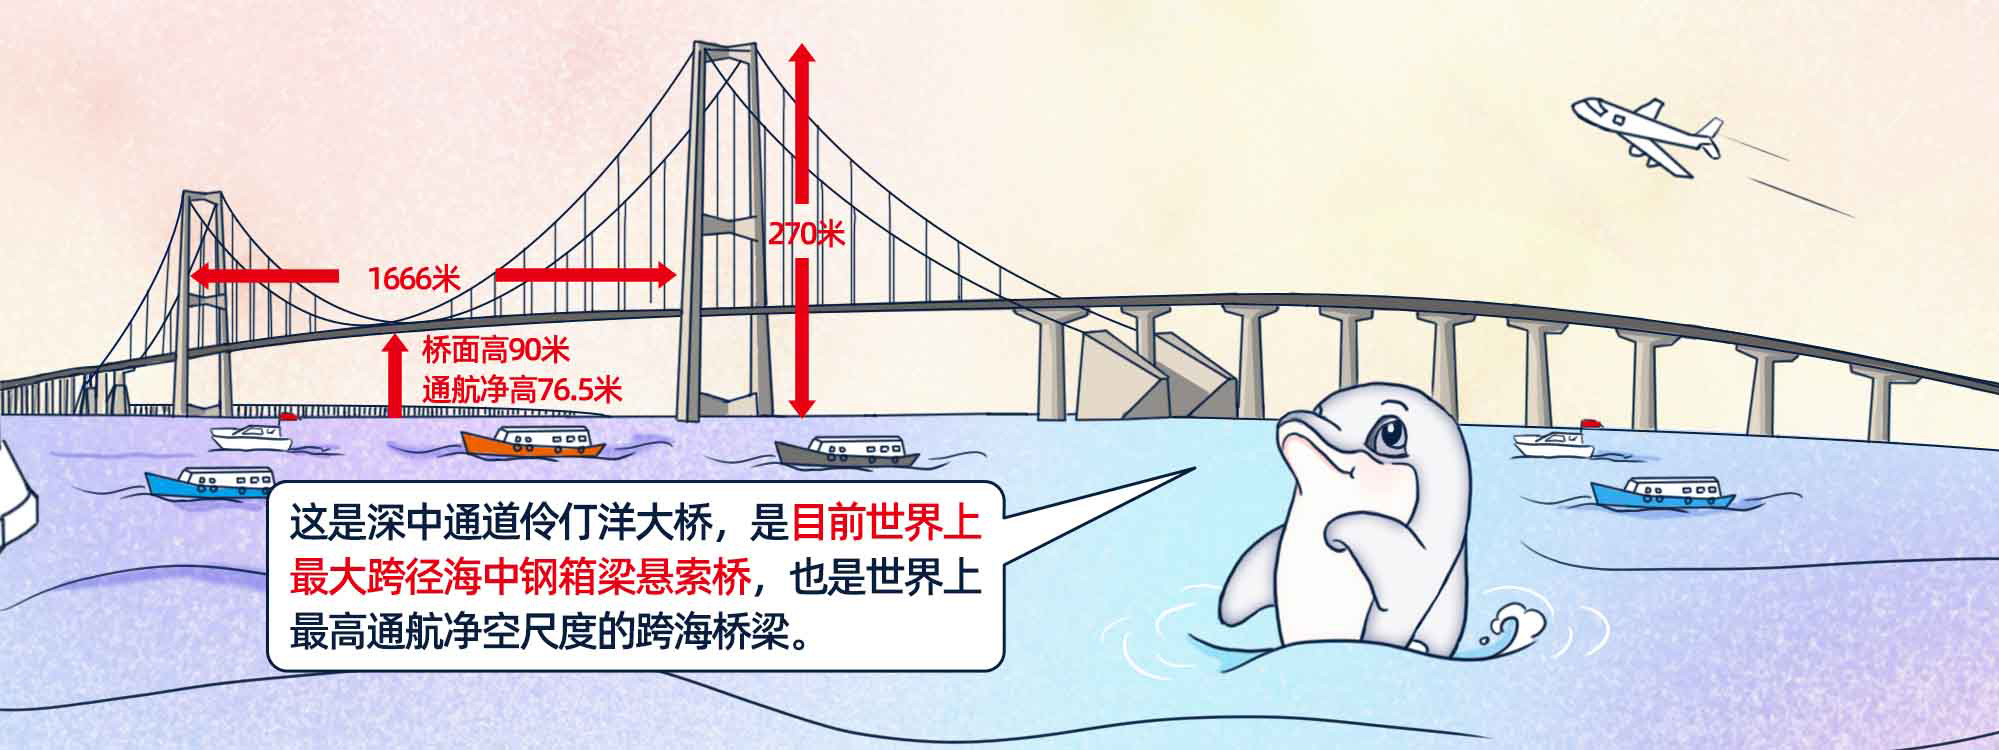 一流湾区图解世界最大跨径海中钢箱梁悬索桥如何造